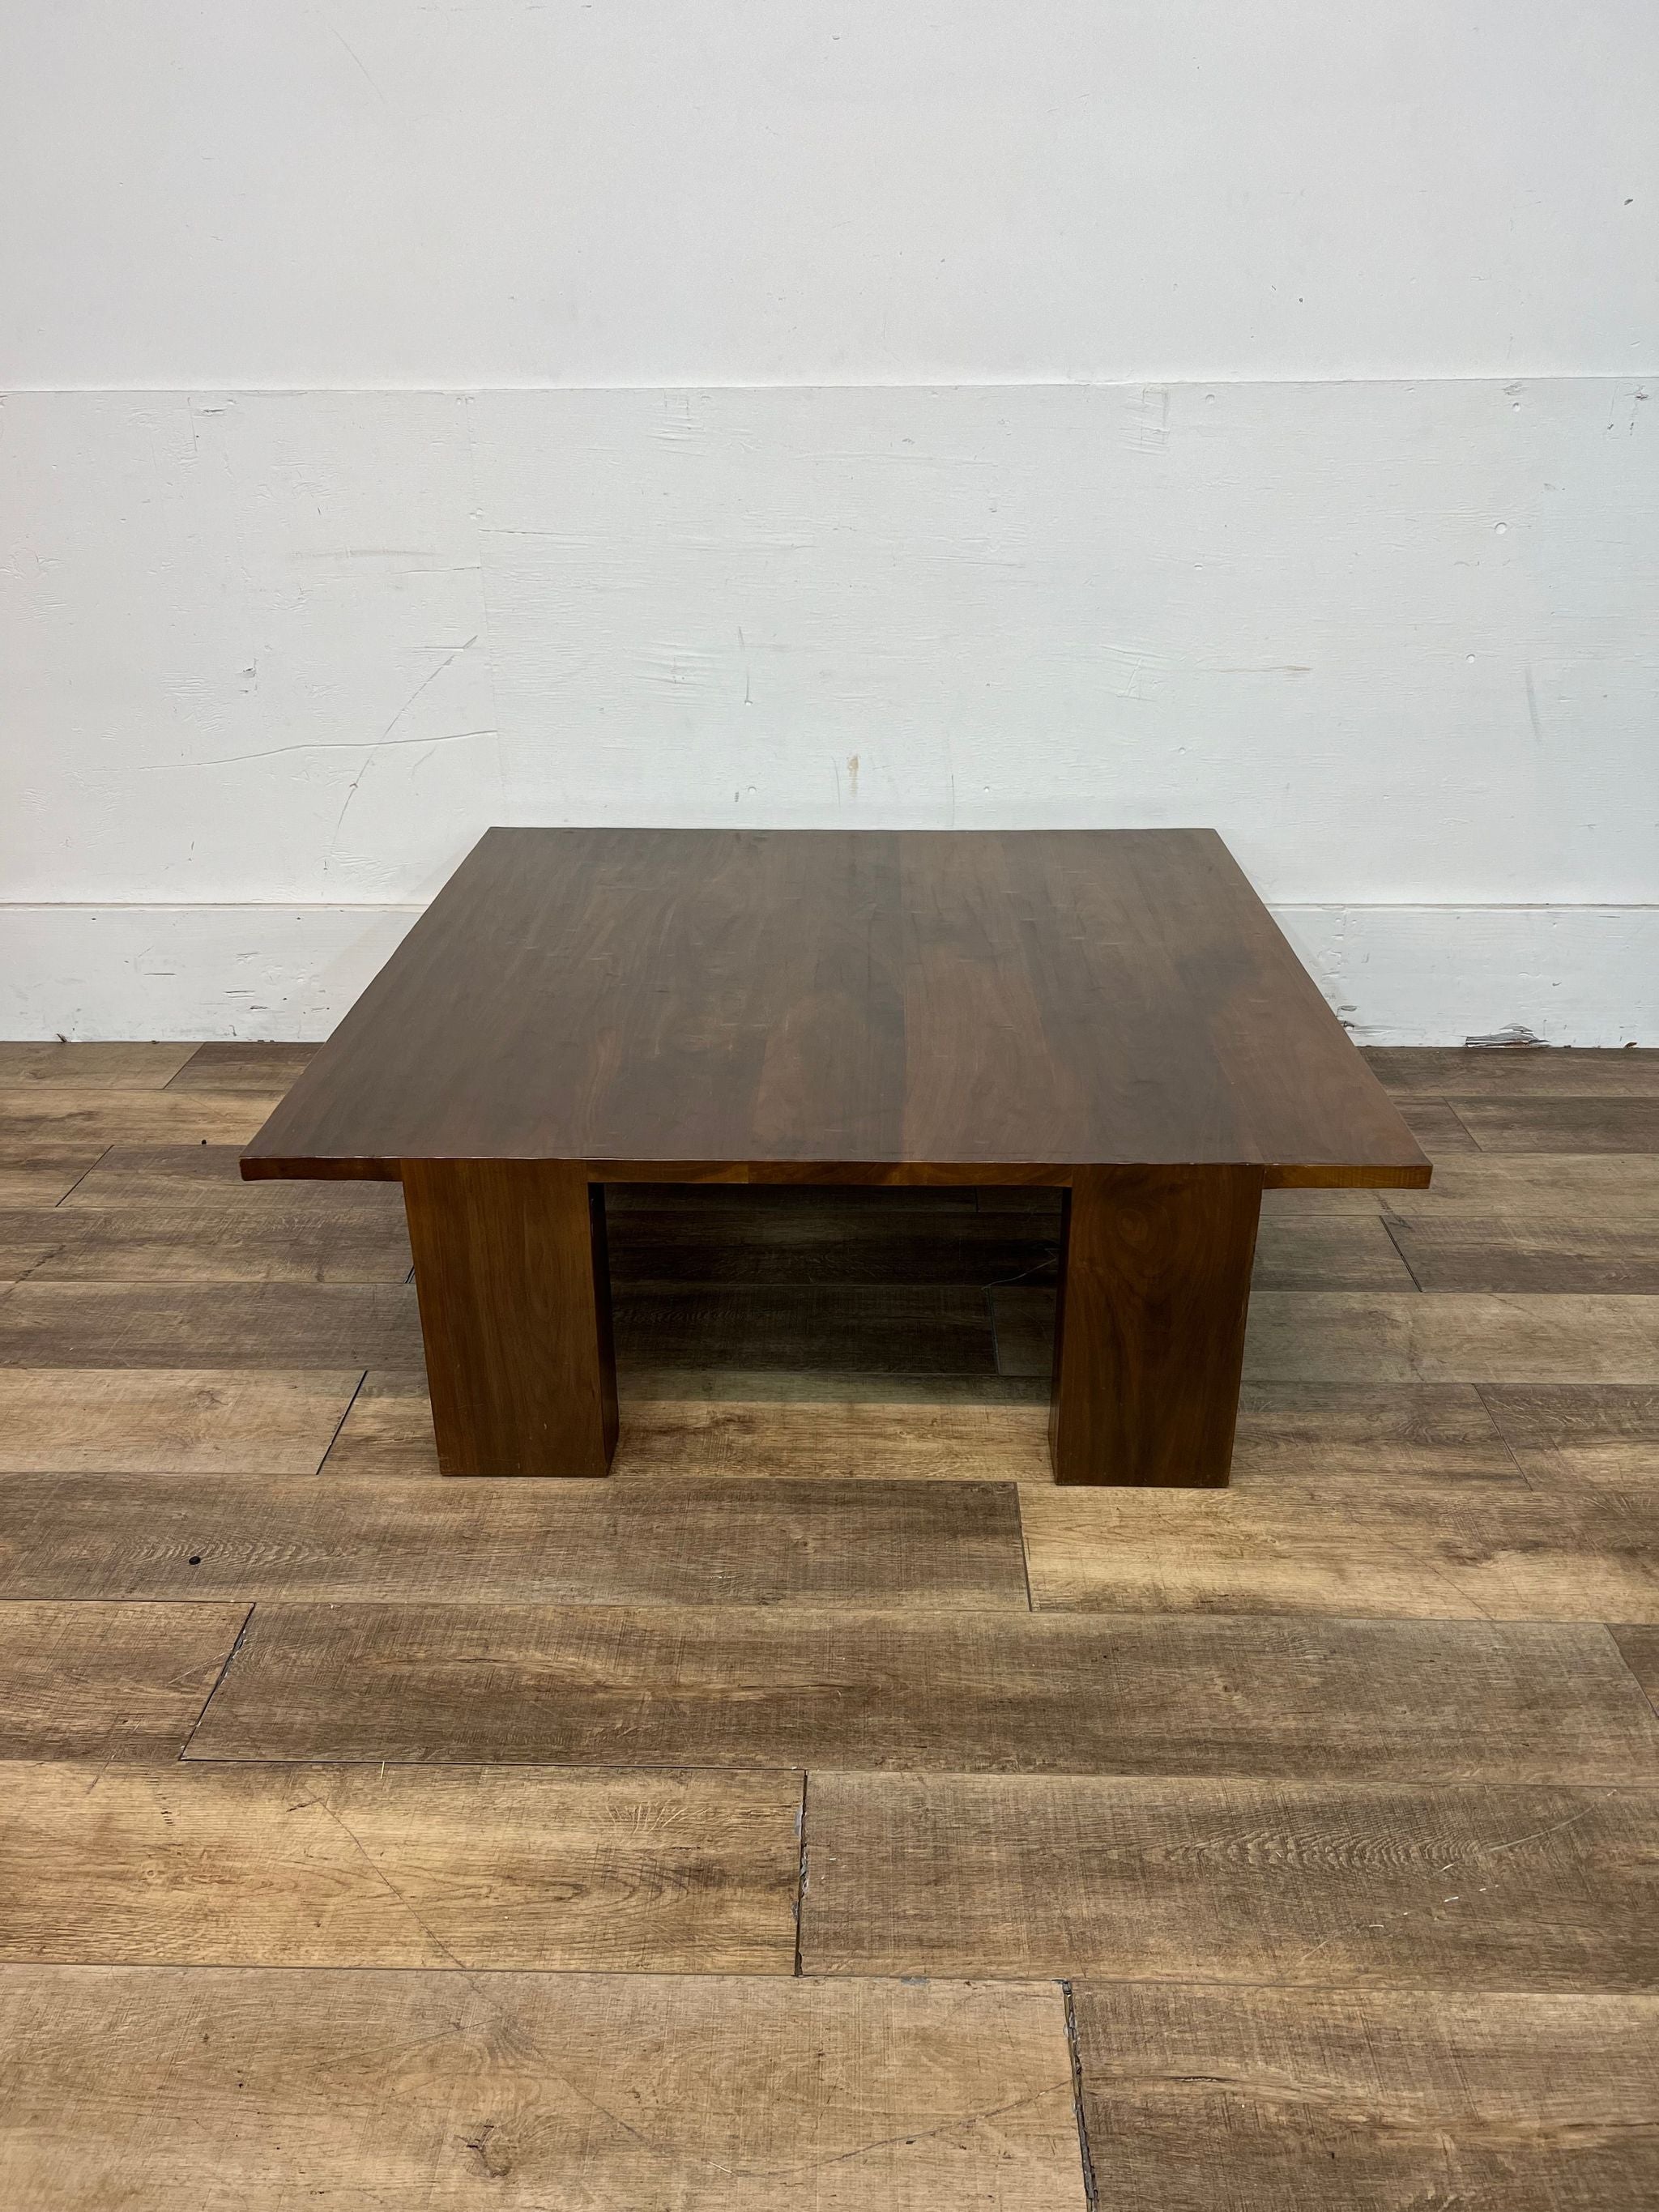 Kendall Wilkinson Design Workshop's bespoke walnut coffee table, shown head-on.